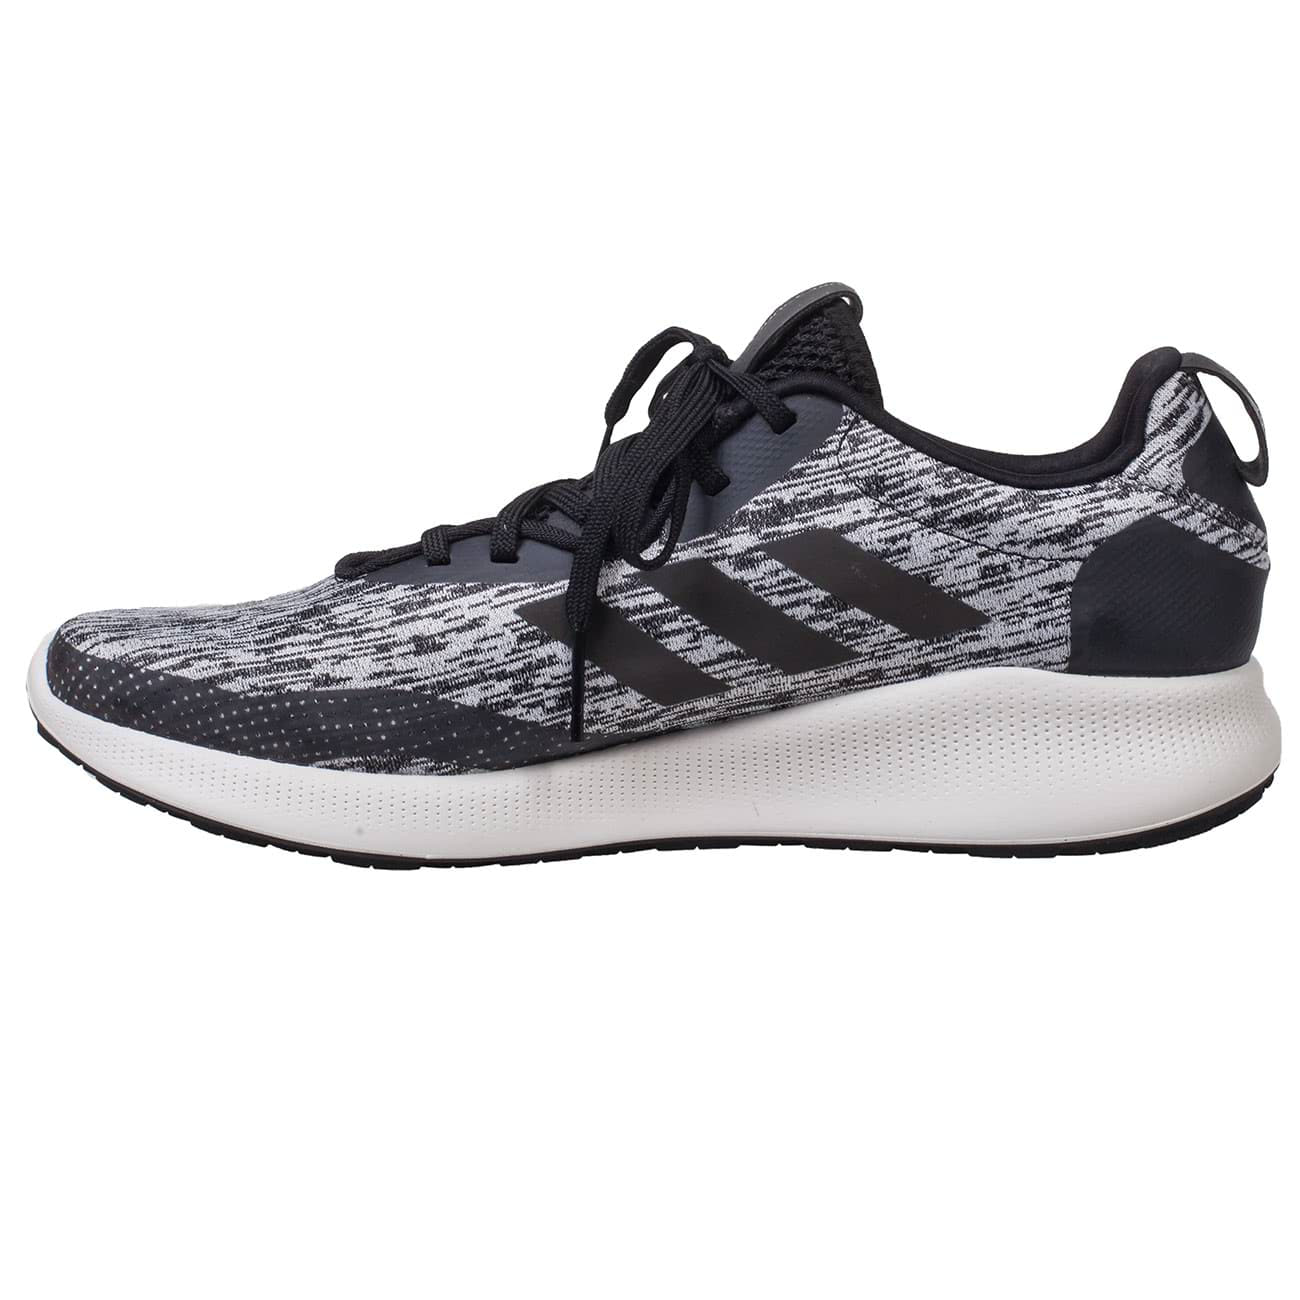 Мужские беговые кроссовки Adidas Purebounce+ серого цвета купить в интернетмагазине Kwinto